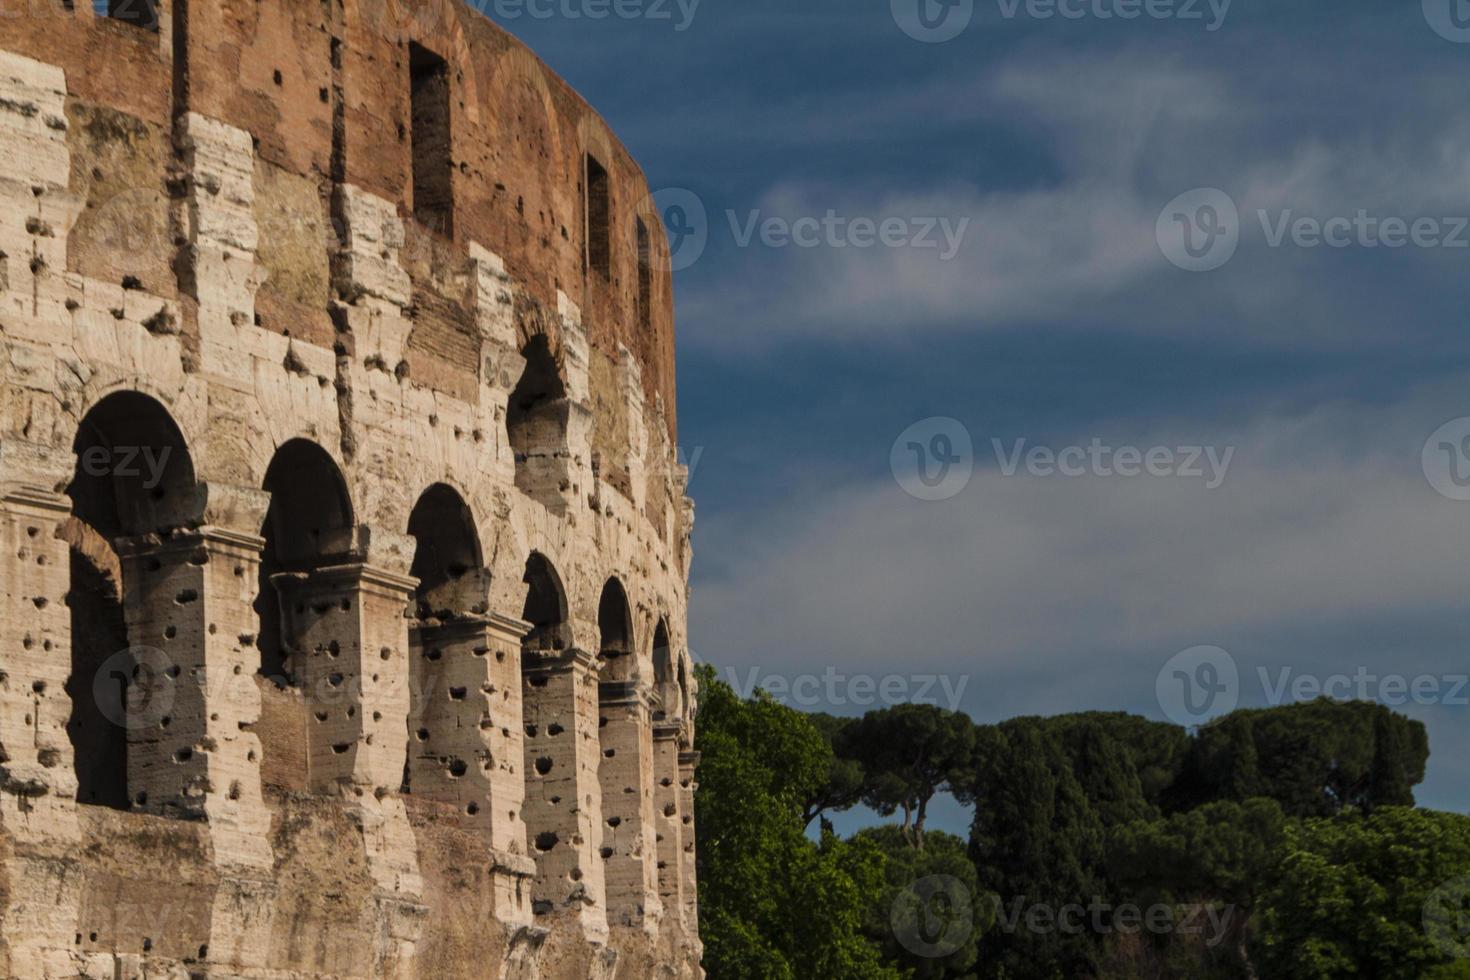 o Coliseu, em Roma, Itália foto